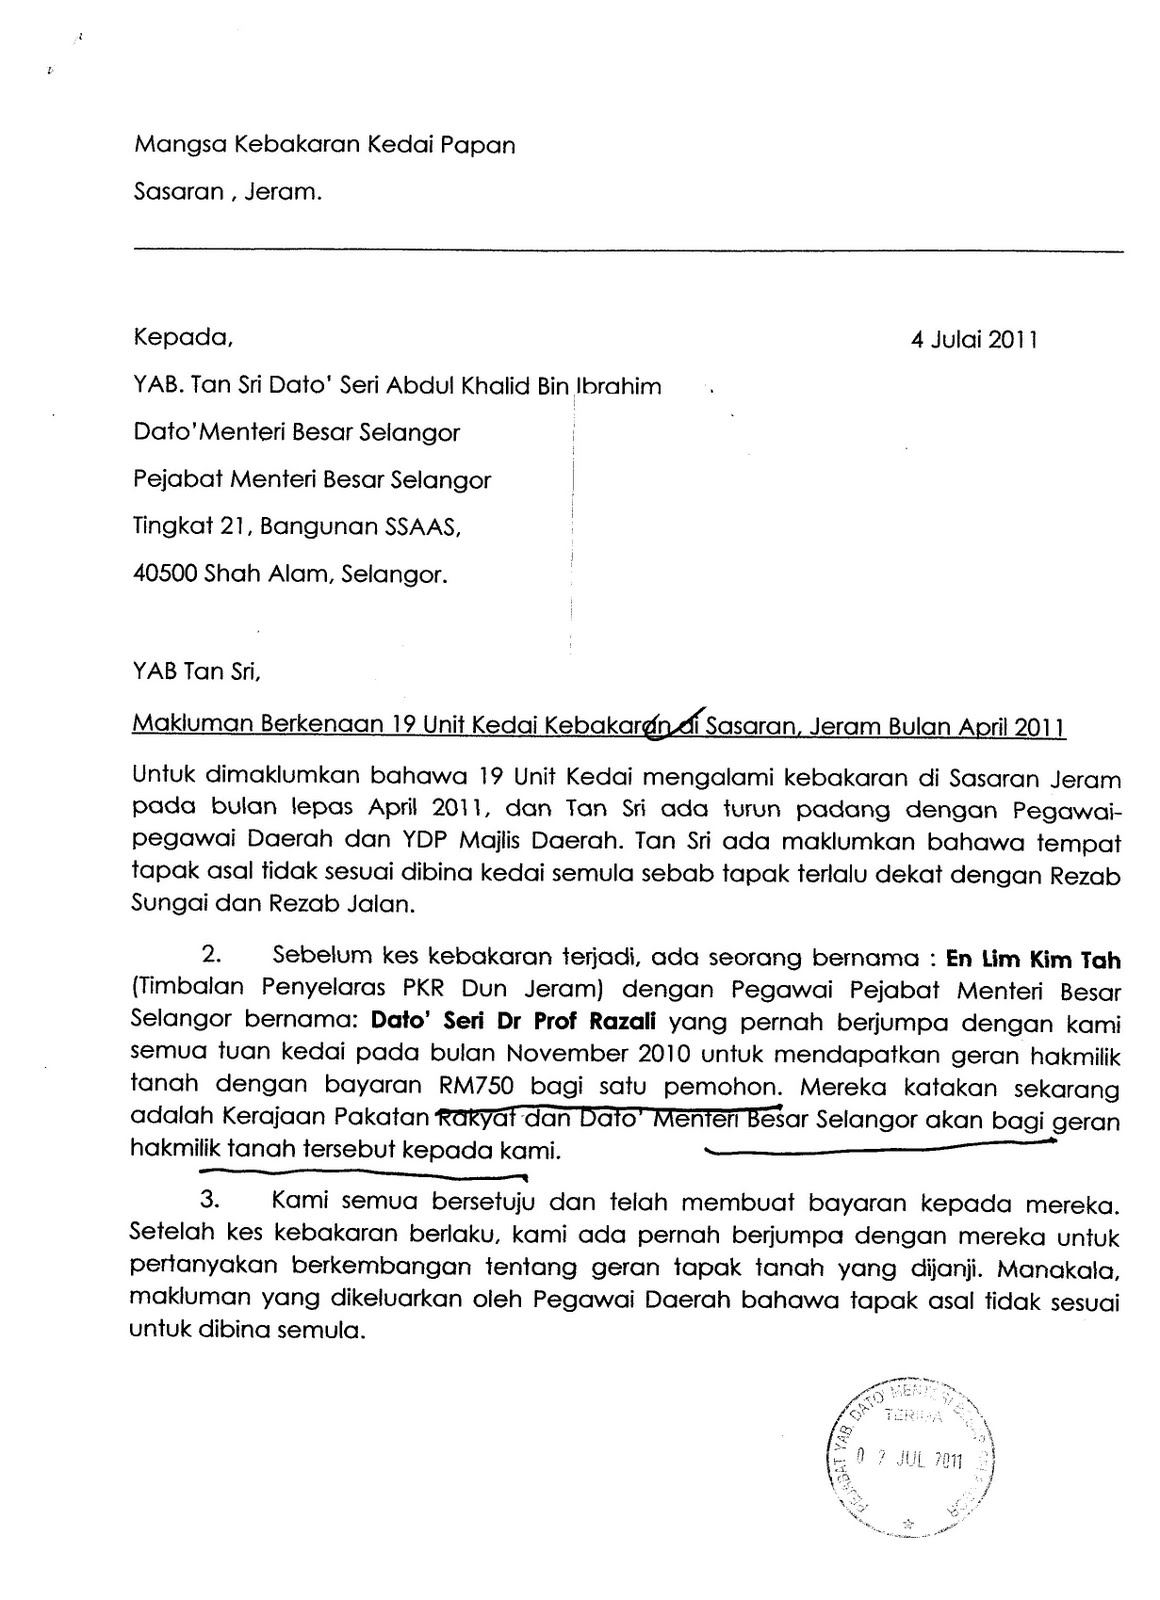 Malaysia Waves: Bekas Pegawai MB Selangor Bakal Masuk UMNO?